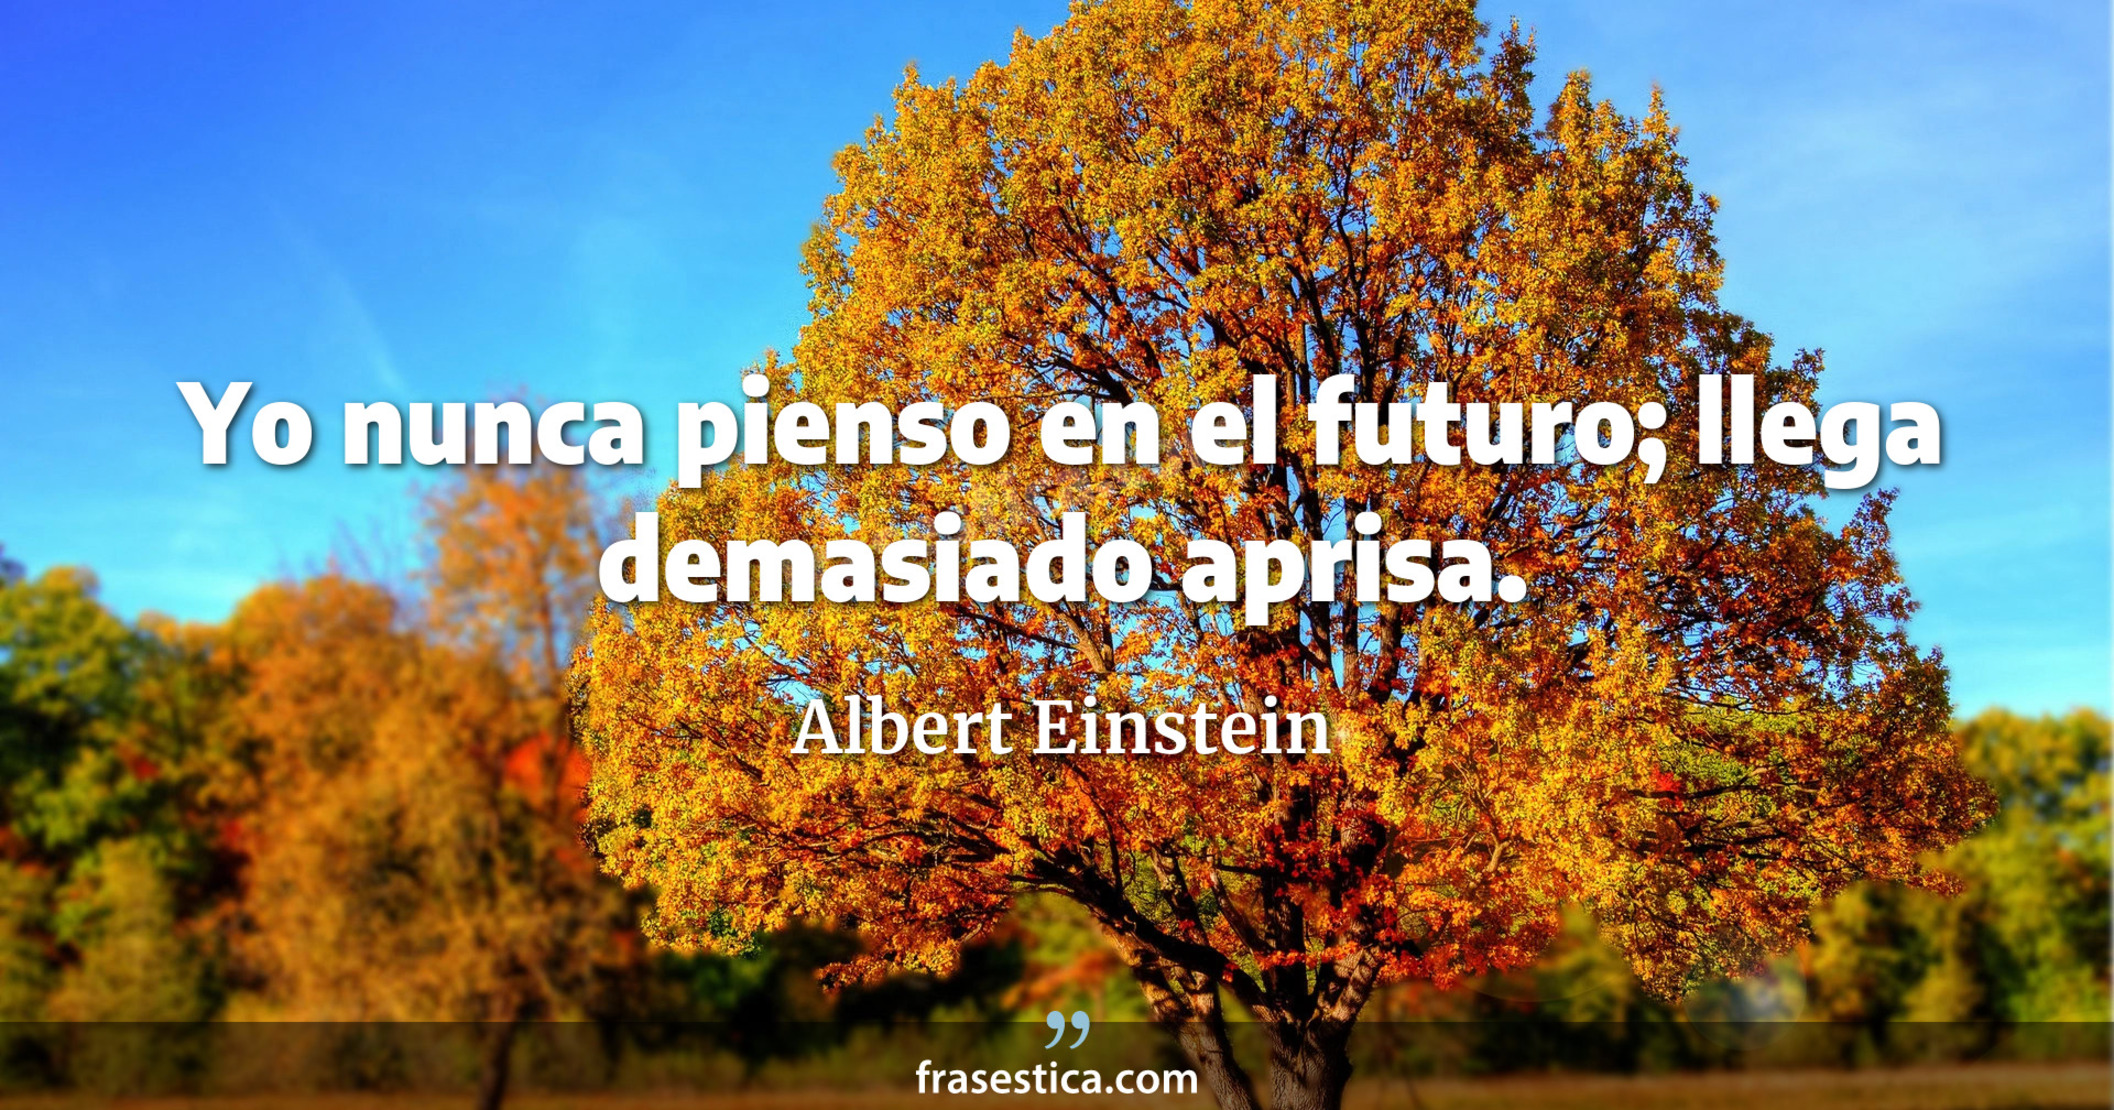 Yo nunca pienso en el futuro; llega demasiado aprisa. - Albert Einstein